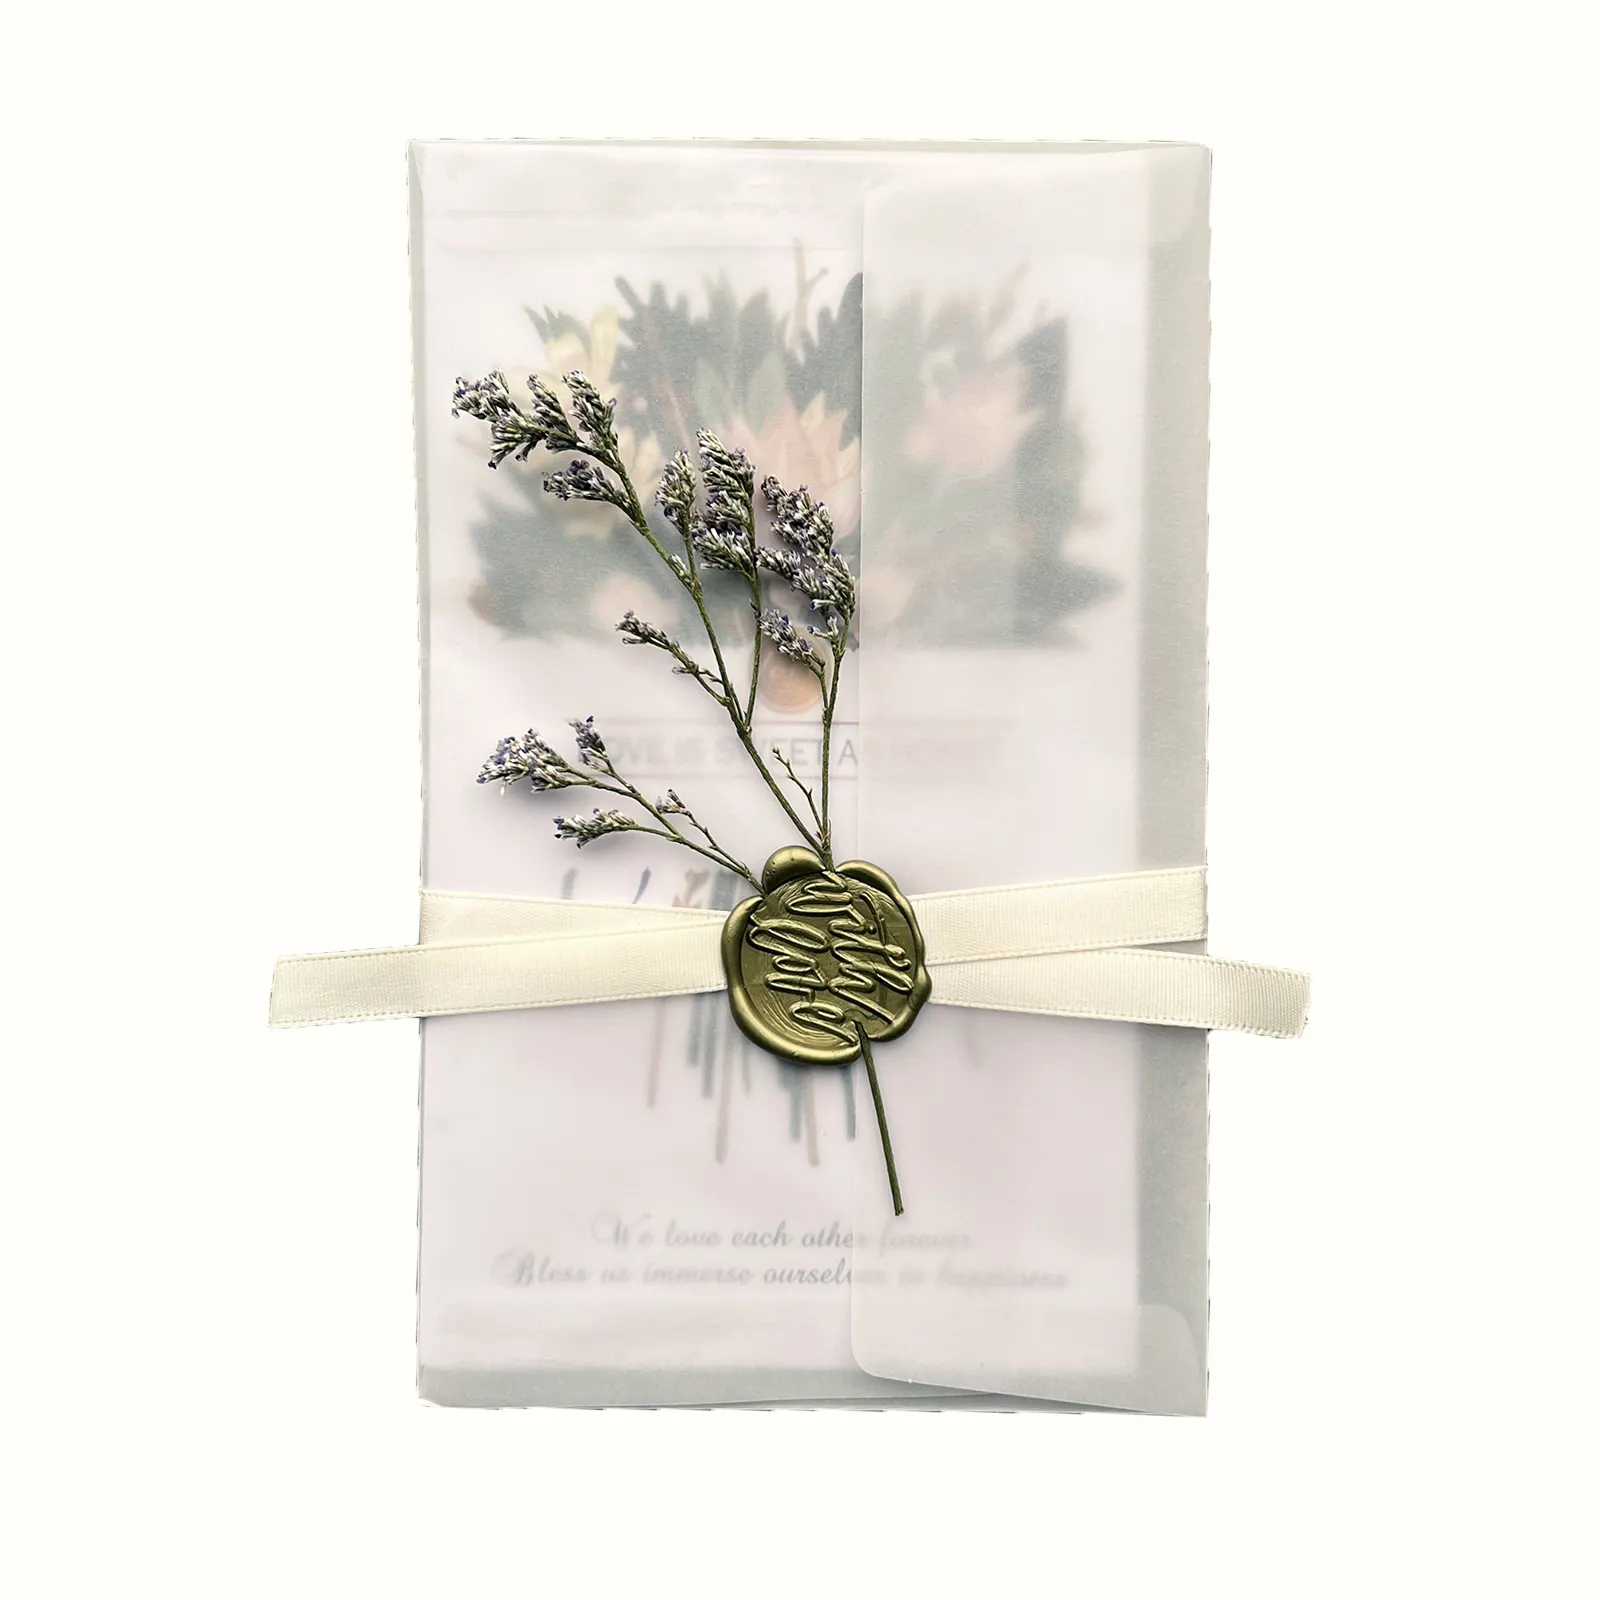 कागज शादी के निमंत्रण कार्ड मुद्रण कस्टम कार्ड के साथ पारदर्शी चर्मपत्र आवरण मुहर के साथ आवृत फूल